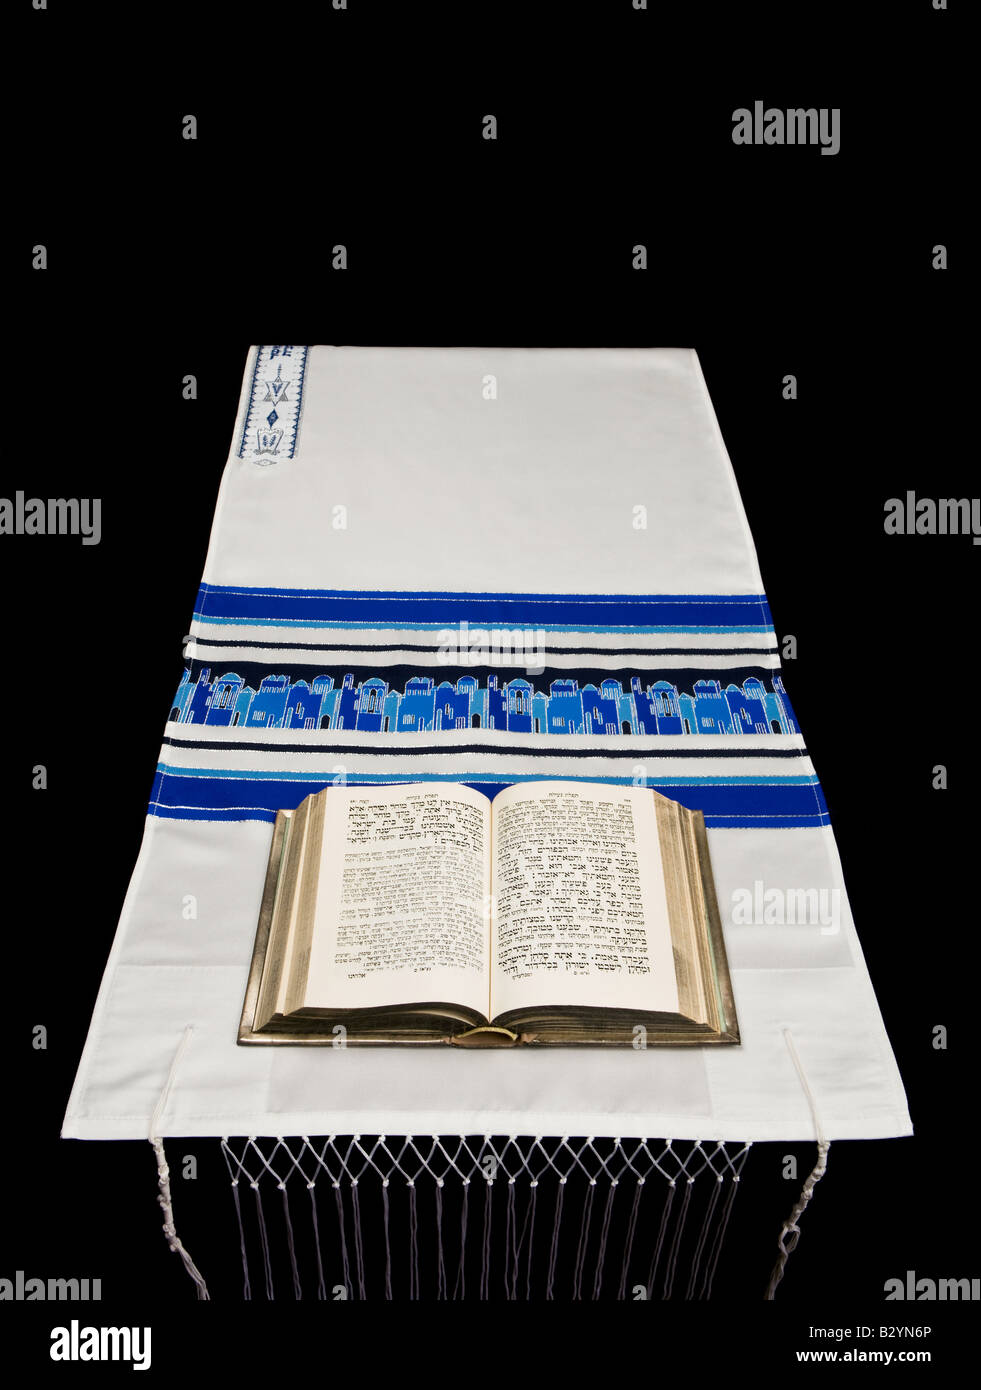 Una preghiera ebraica libro o Siddur, su uno scialle rituale o tallit, contro uno sfondo nero. Foto Stock